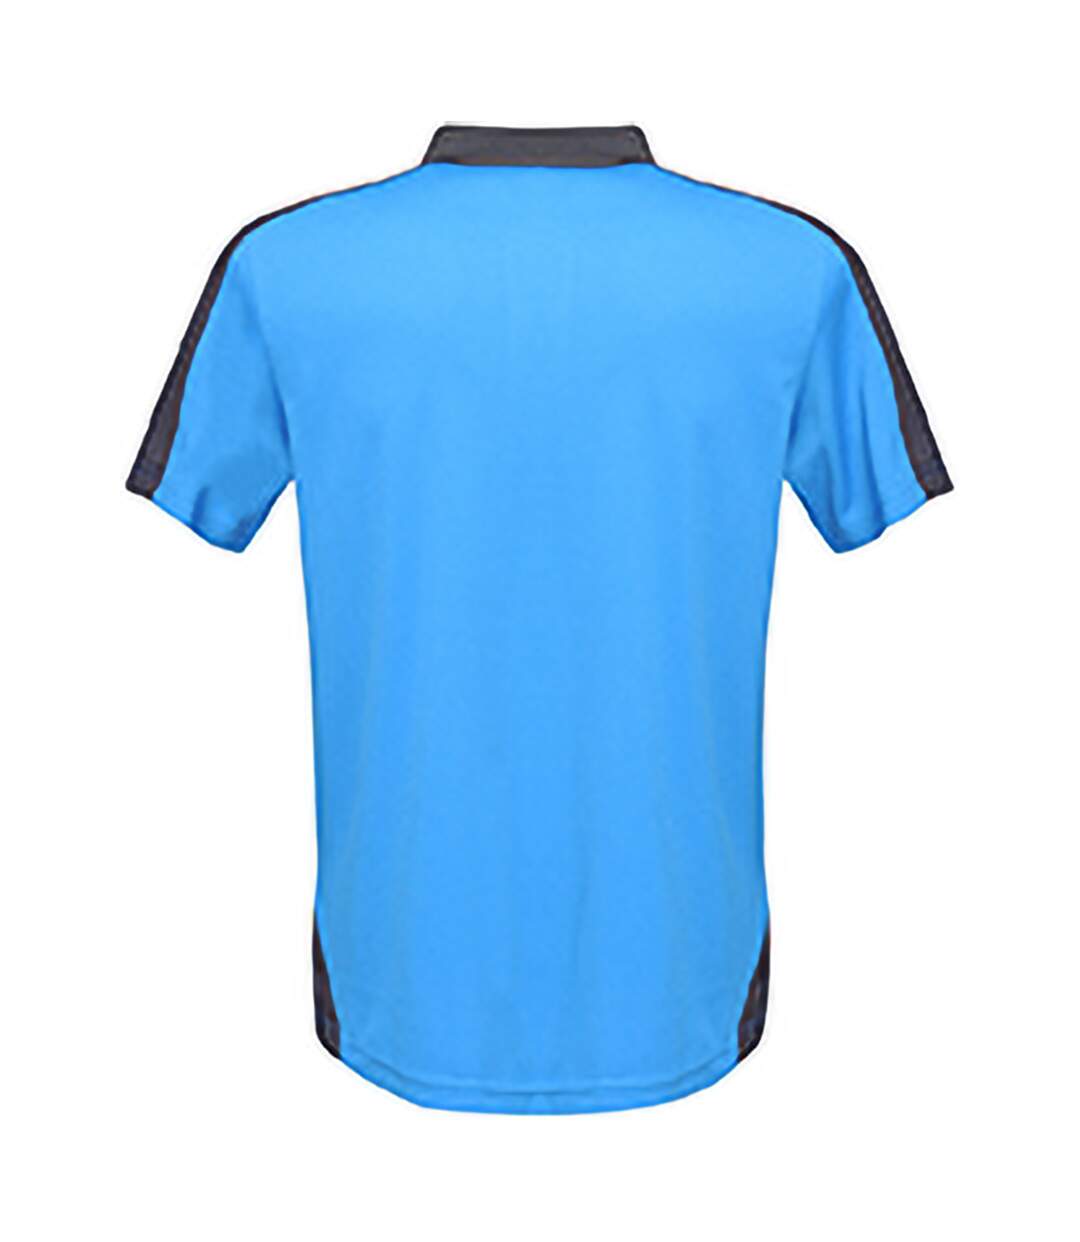 Regatta - Polo de sport CONTRAST - Homme (Bleu clair / bleu marine) - UTPC3304